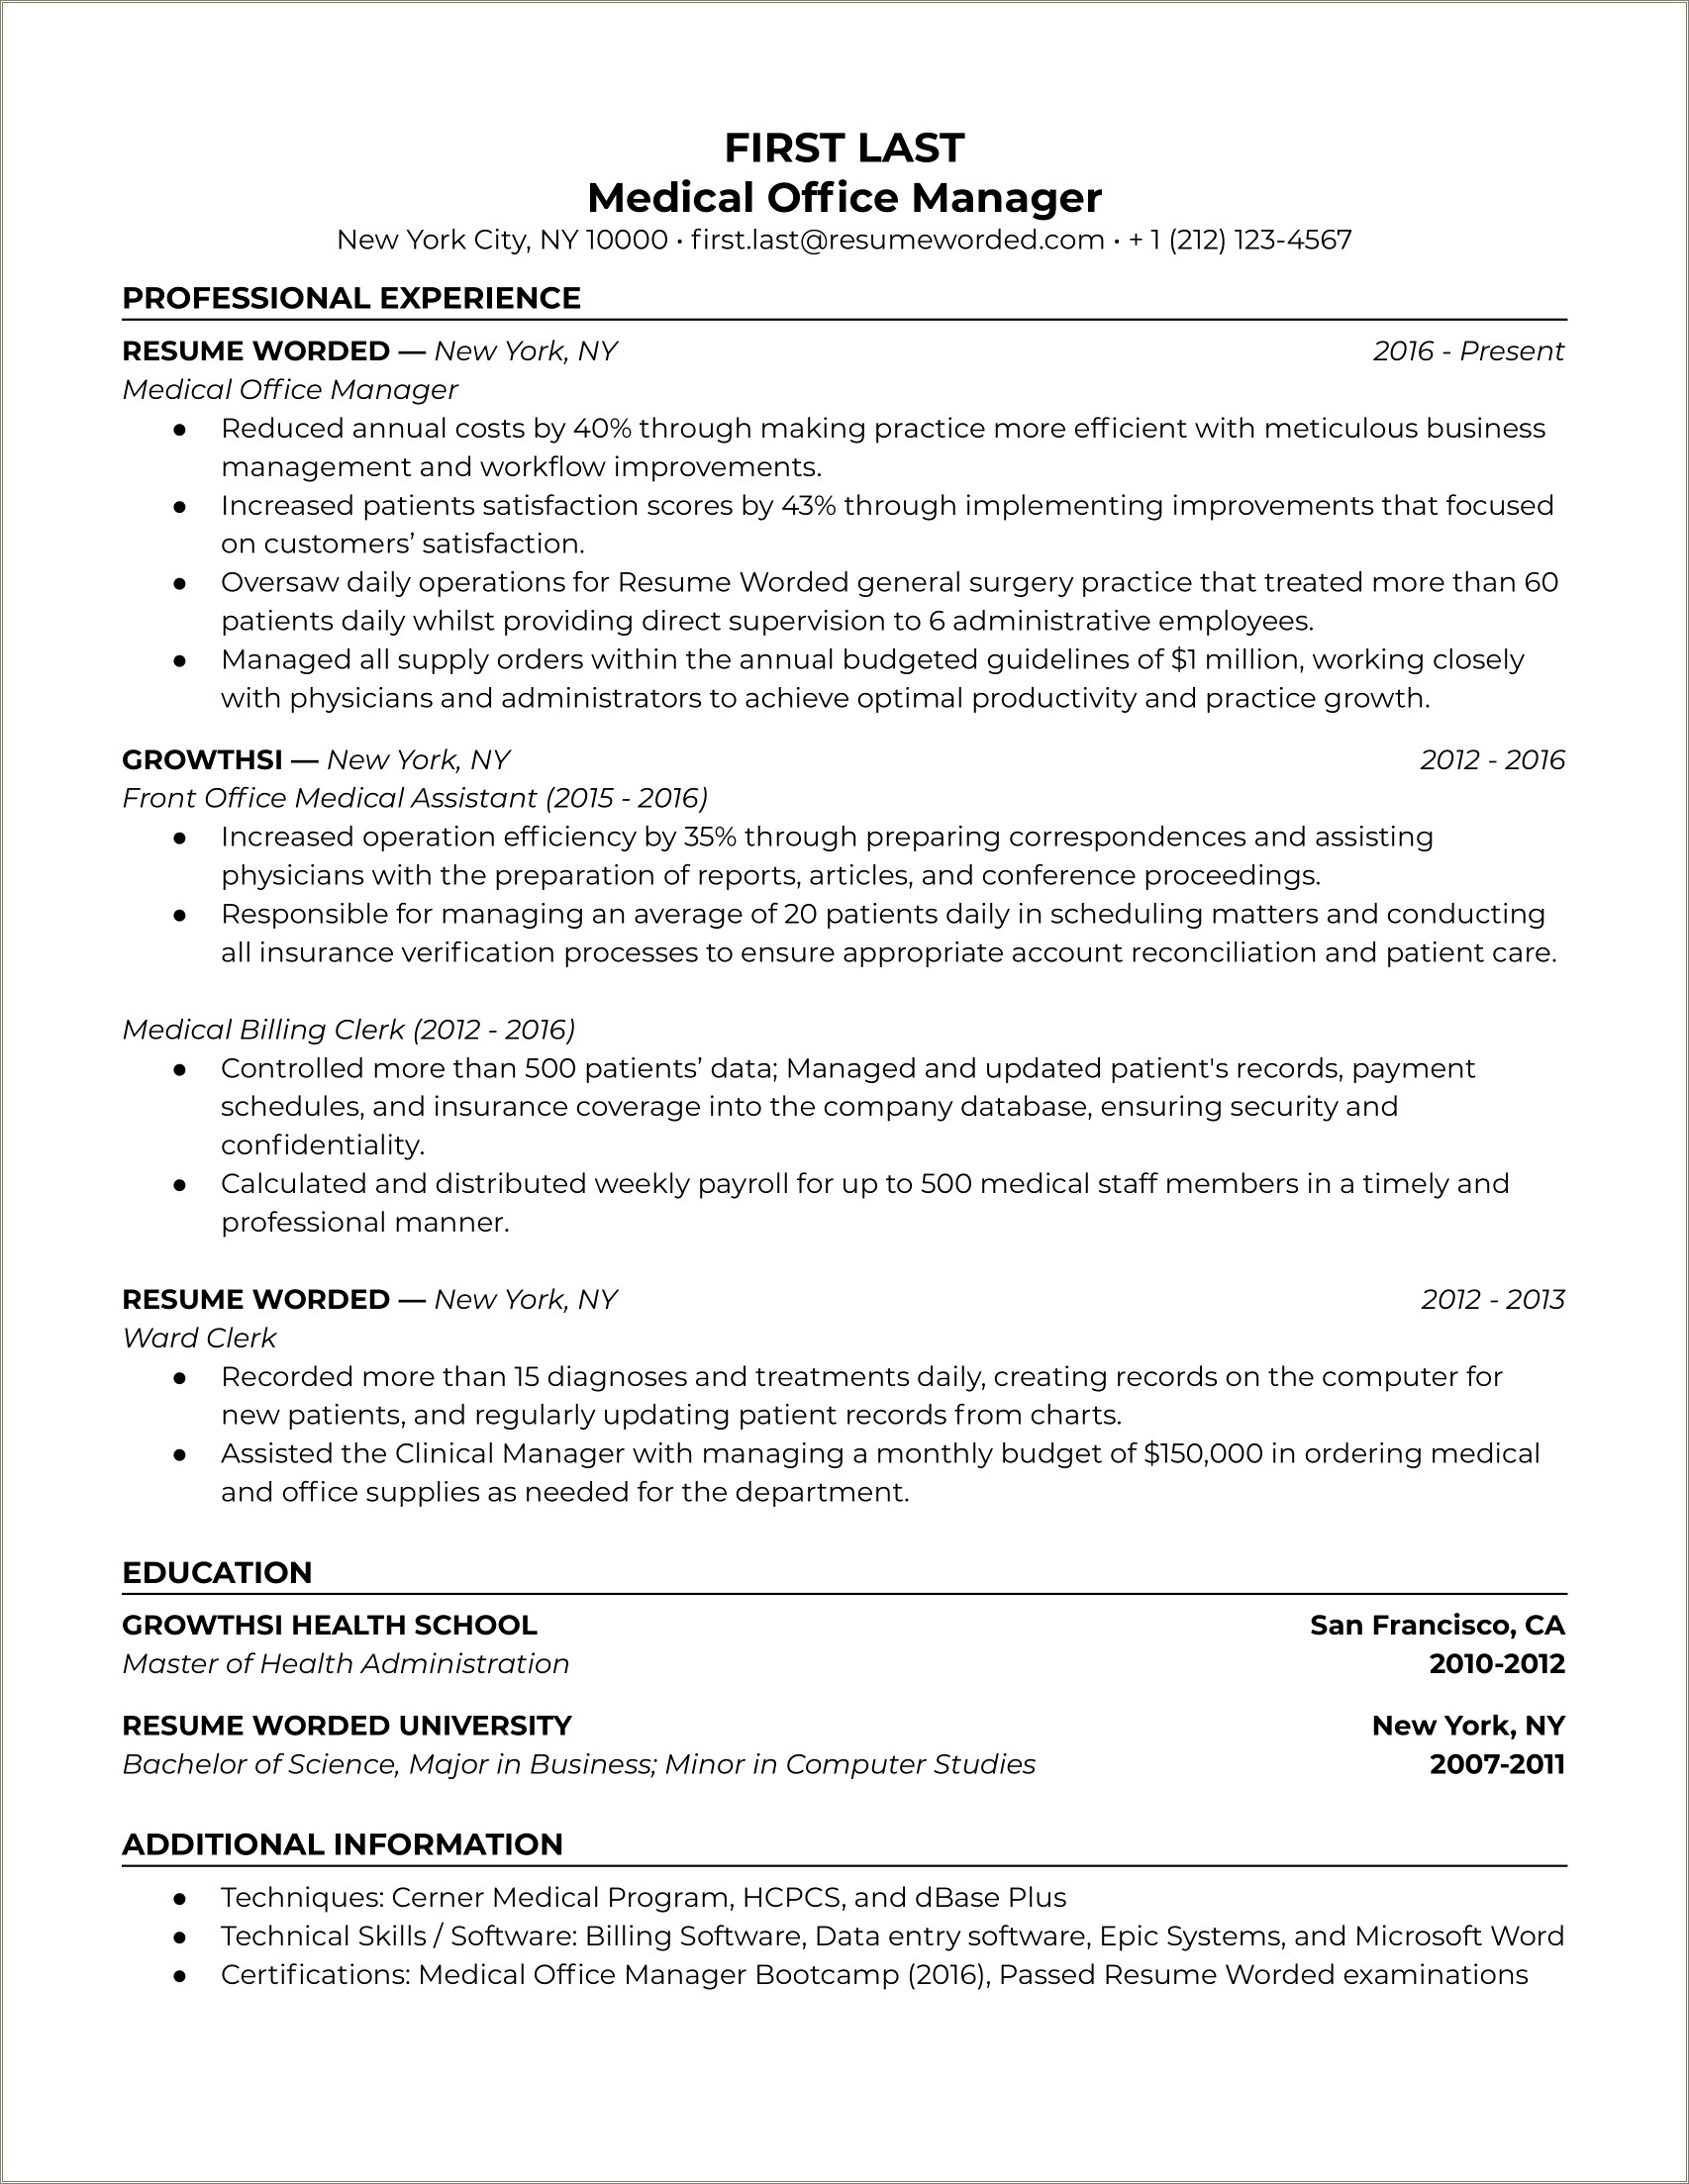 Bank Verifictation Job Description For Resume